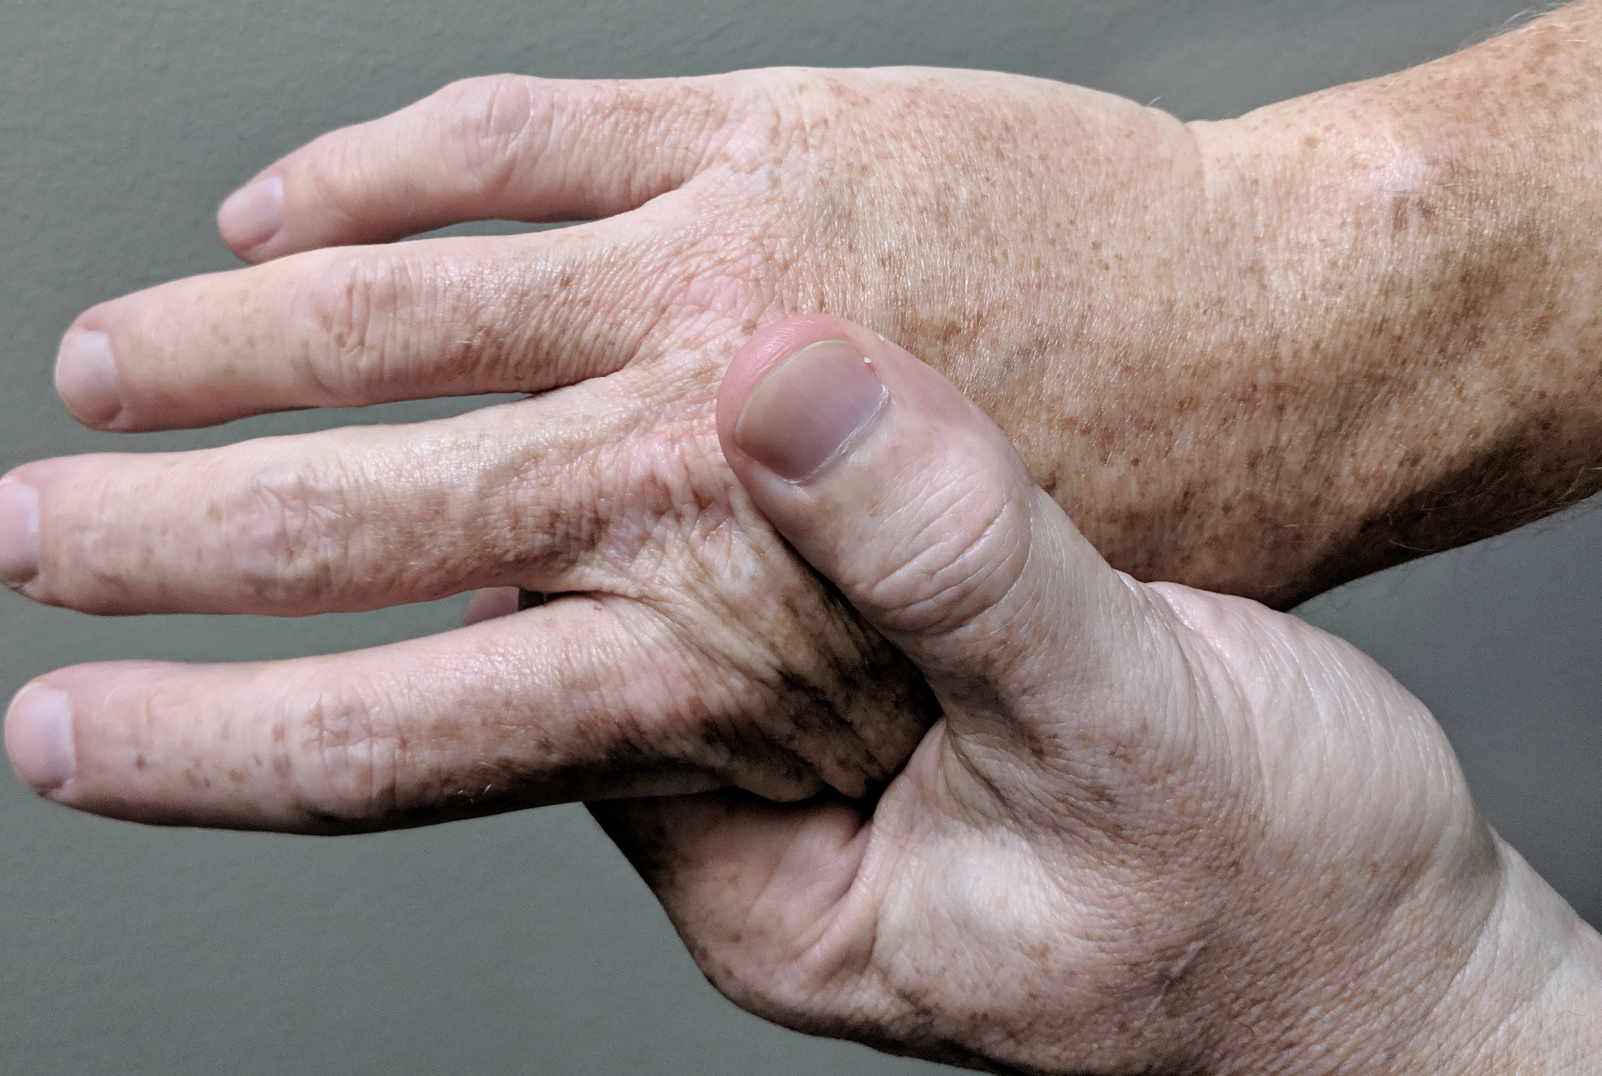 Arthritic hands in pain